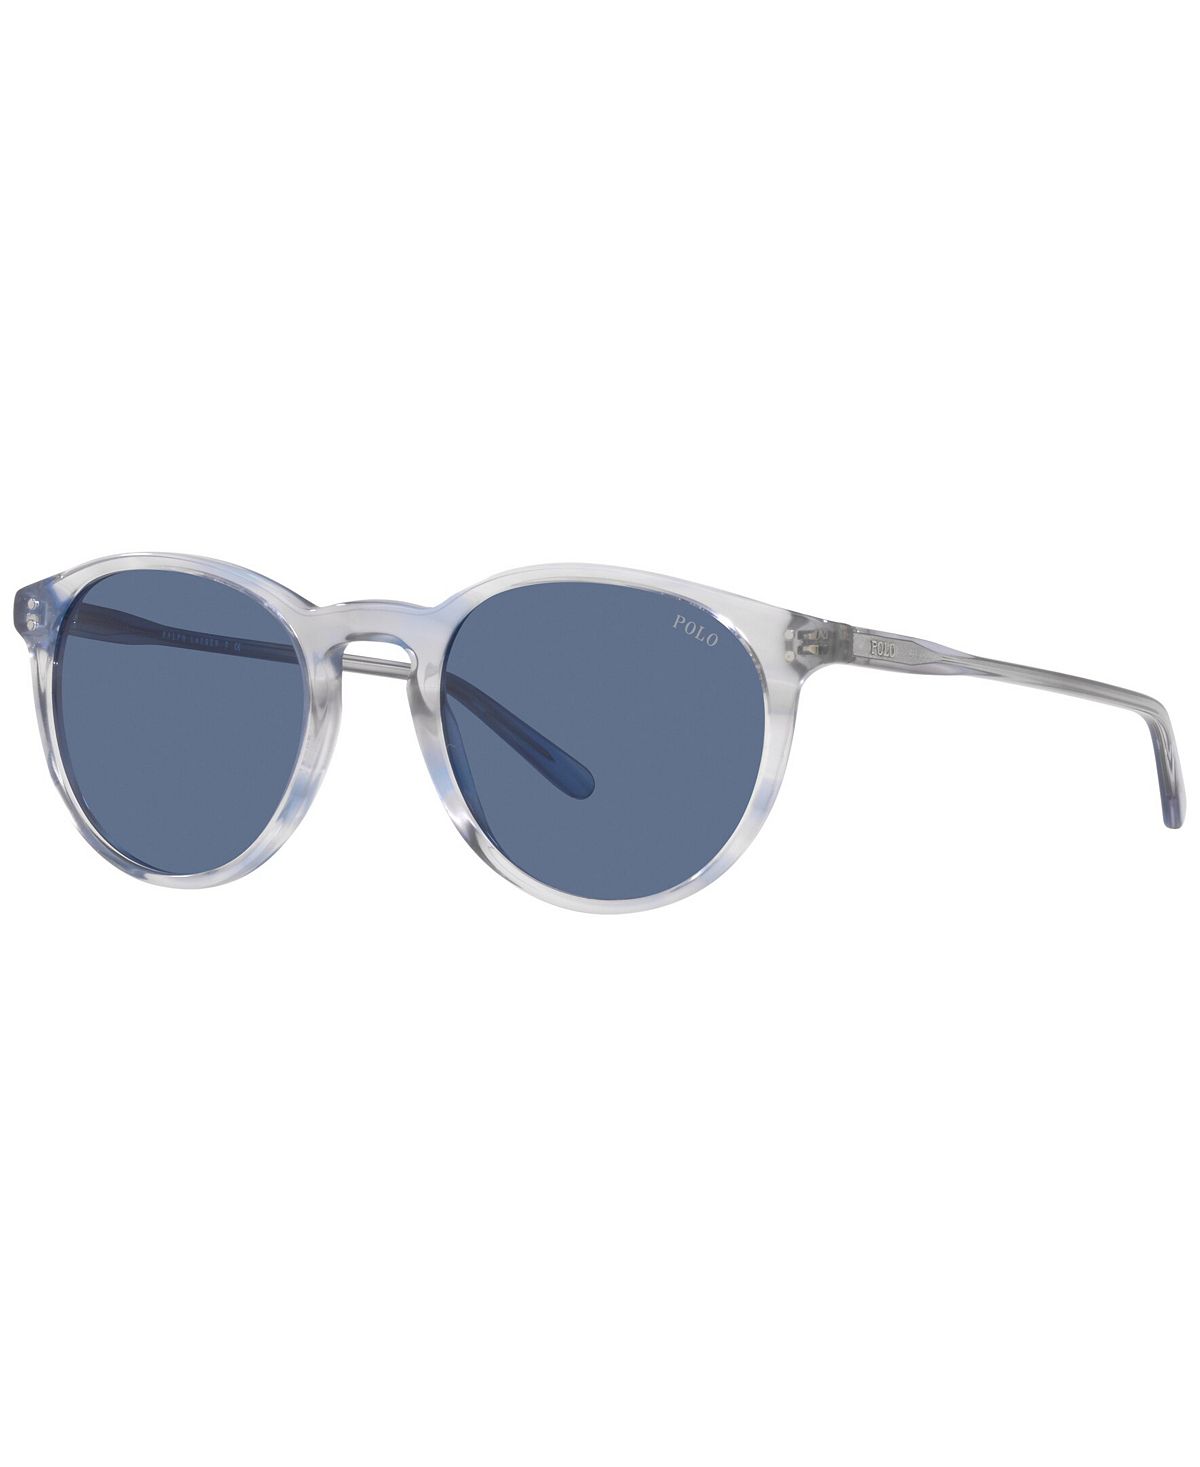 Мужские солнцезащитные очки, 50 Polo Ralph Lauren